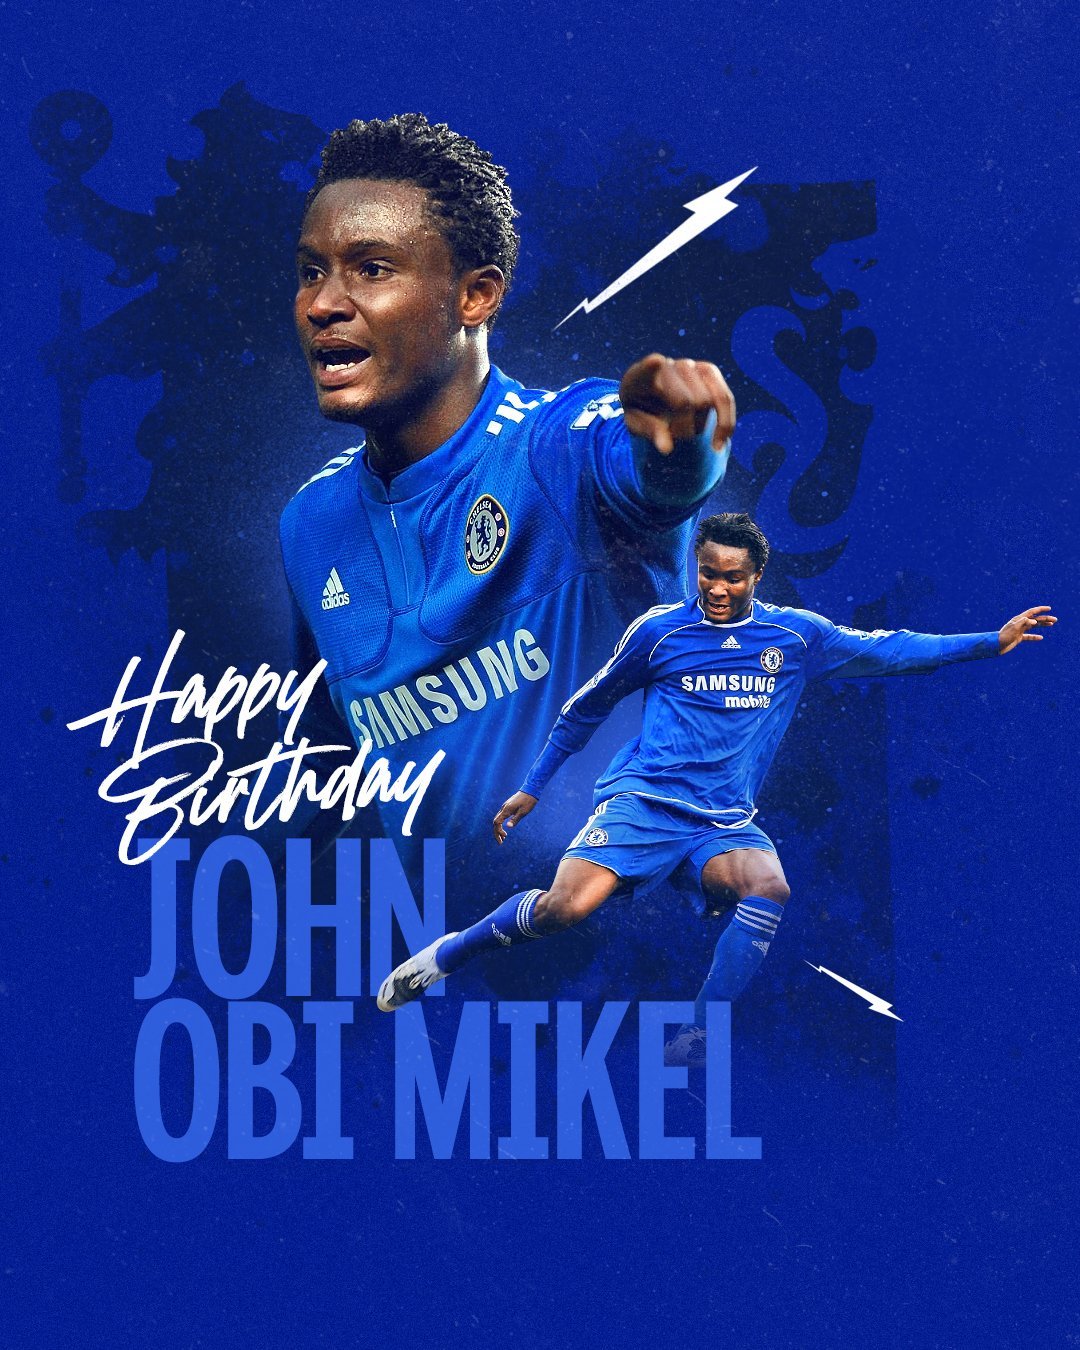 Happy 35th Birthday to both John Obi Mikel & David Luiz. 